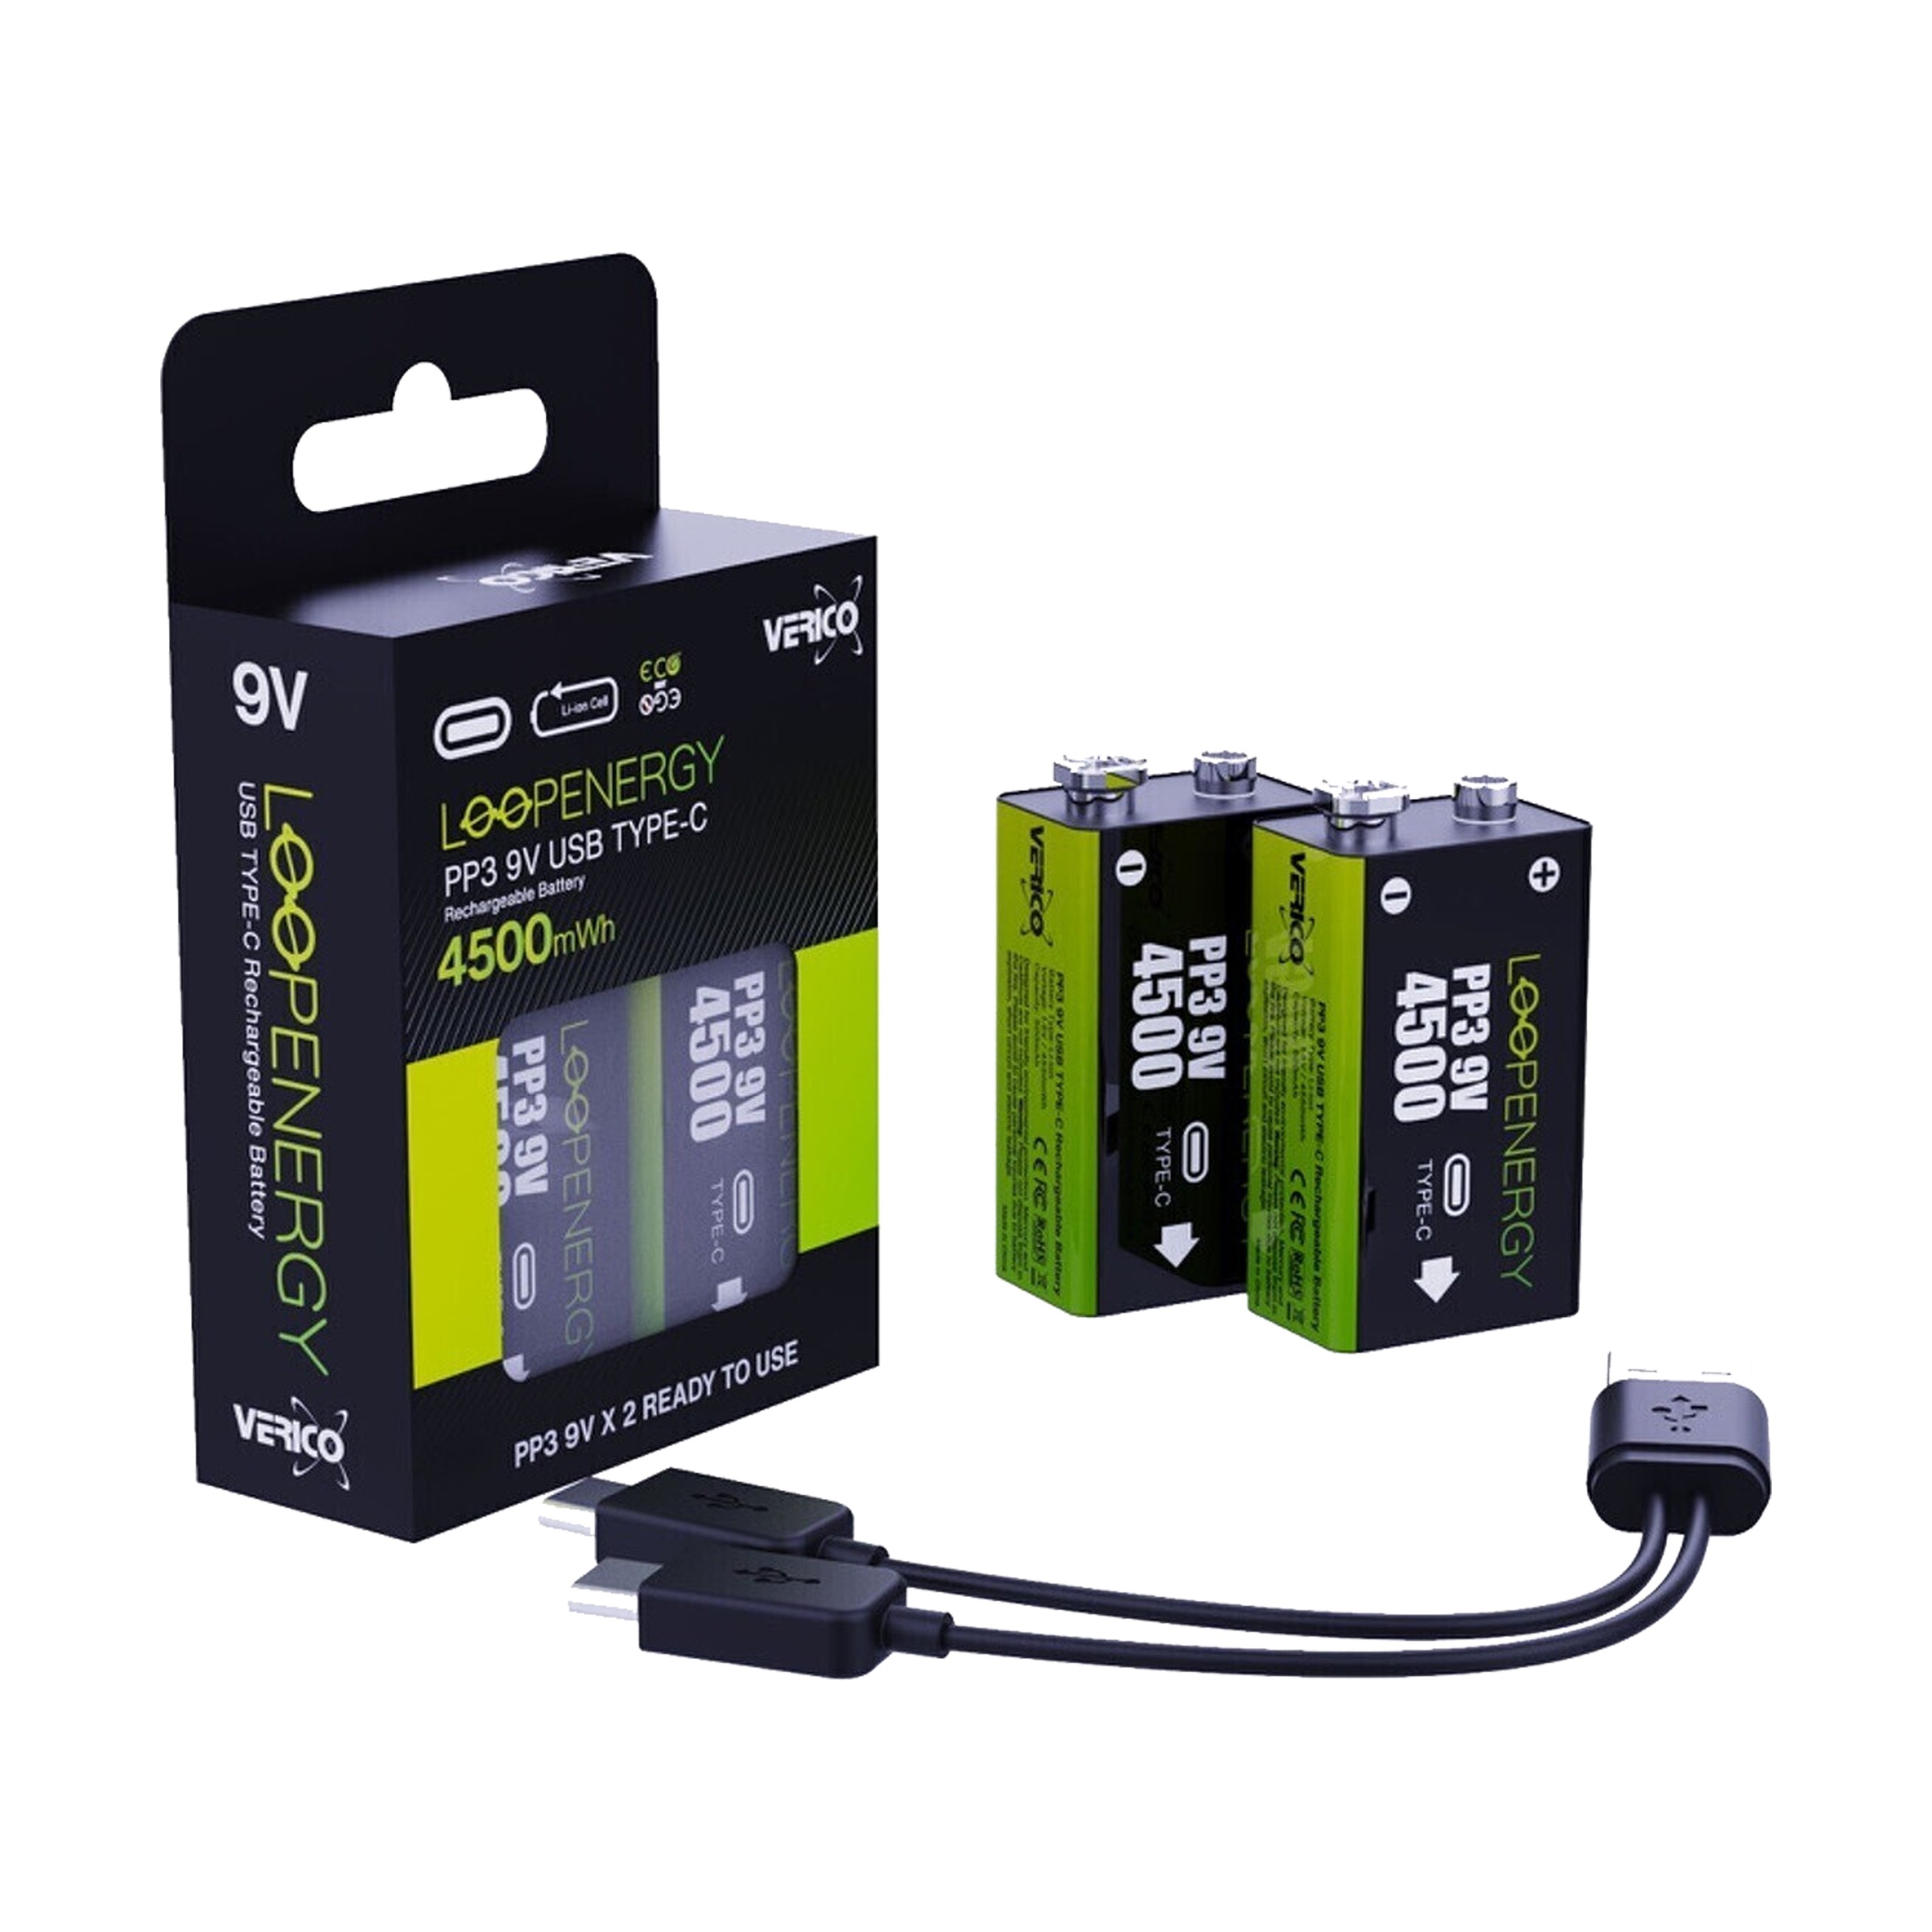 Verico Batterie »Loopenergy 9V (Block)«, 1,5 V, (2 St.), USB-C Kabel im Lieferumfang